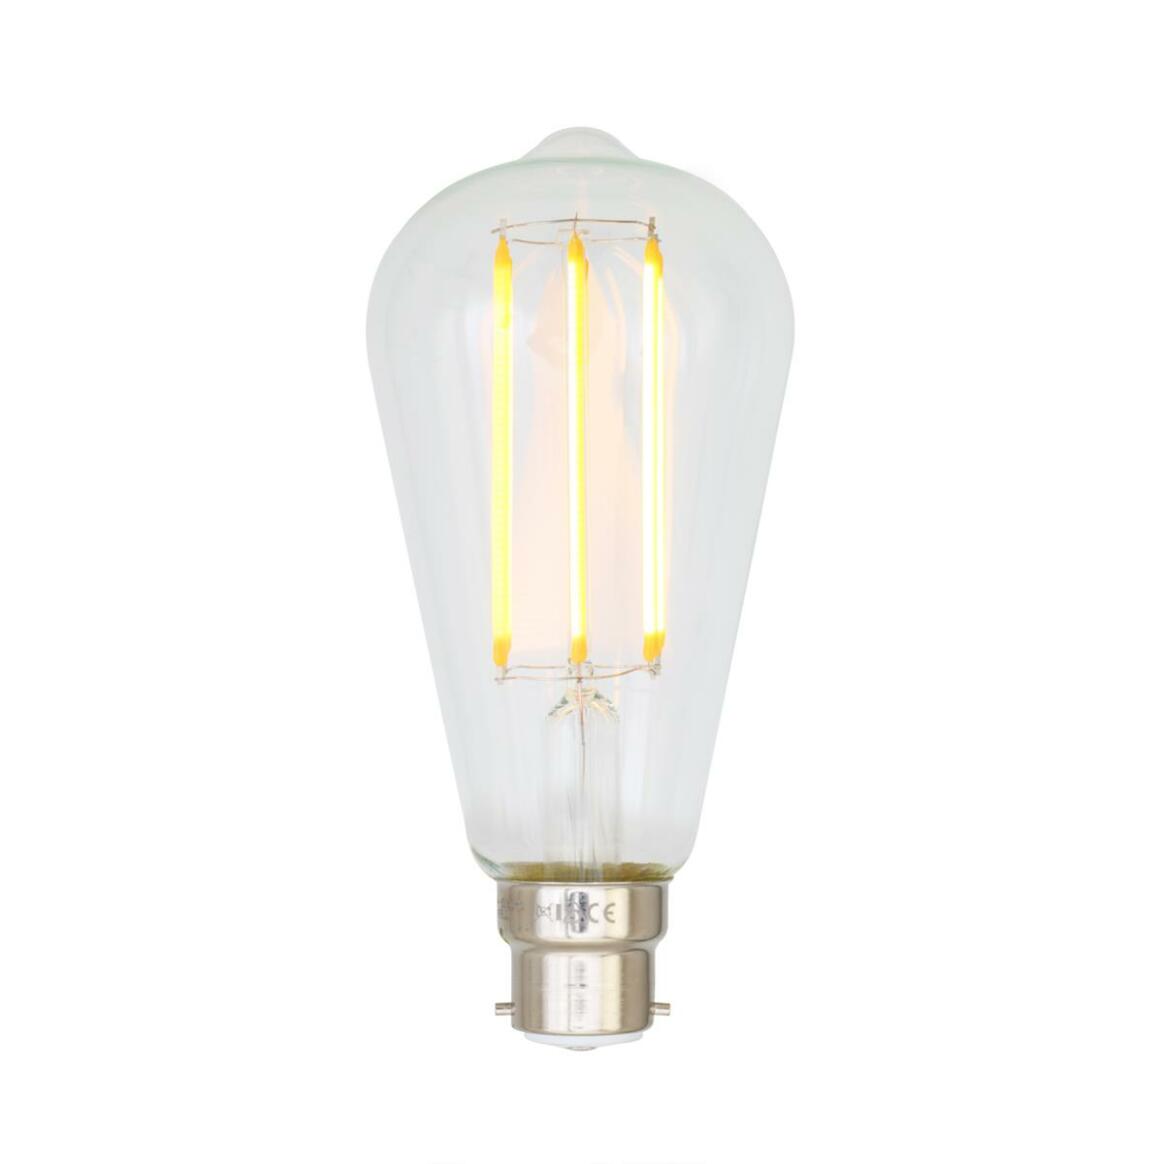 Ampoule LED B22 à filament en forme de goutte d'eau variable d'intensité 4W 2300k 350lm 14.2cm main product image